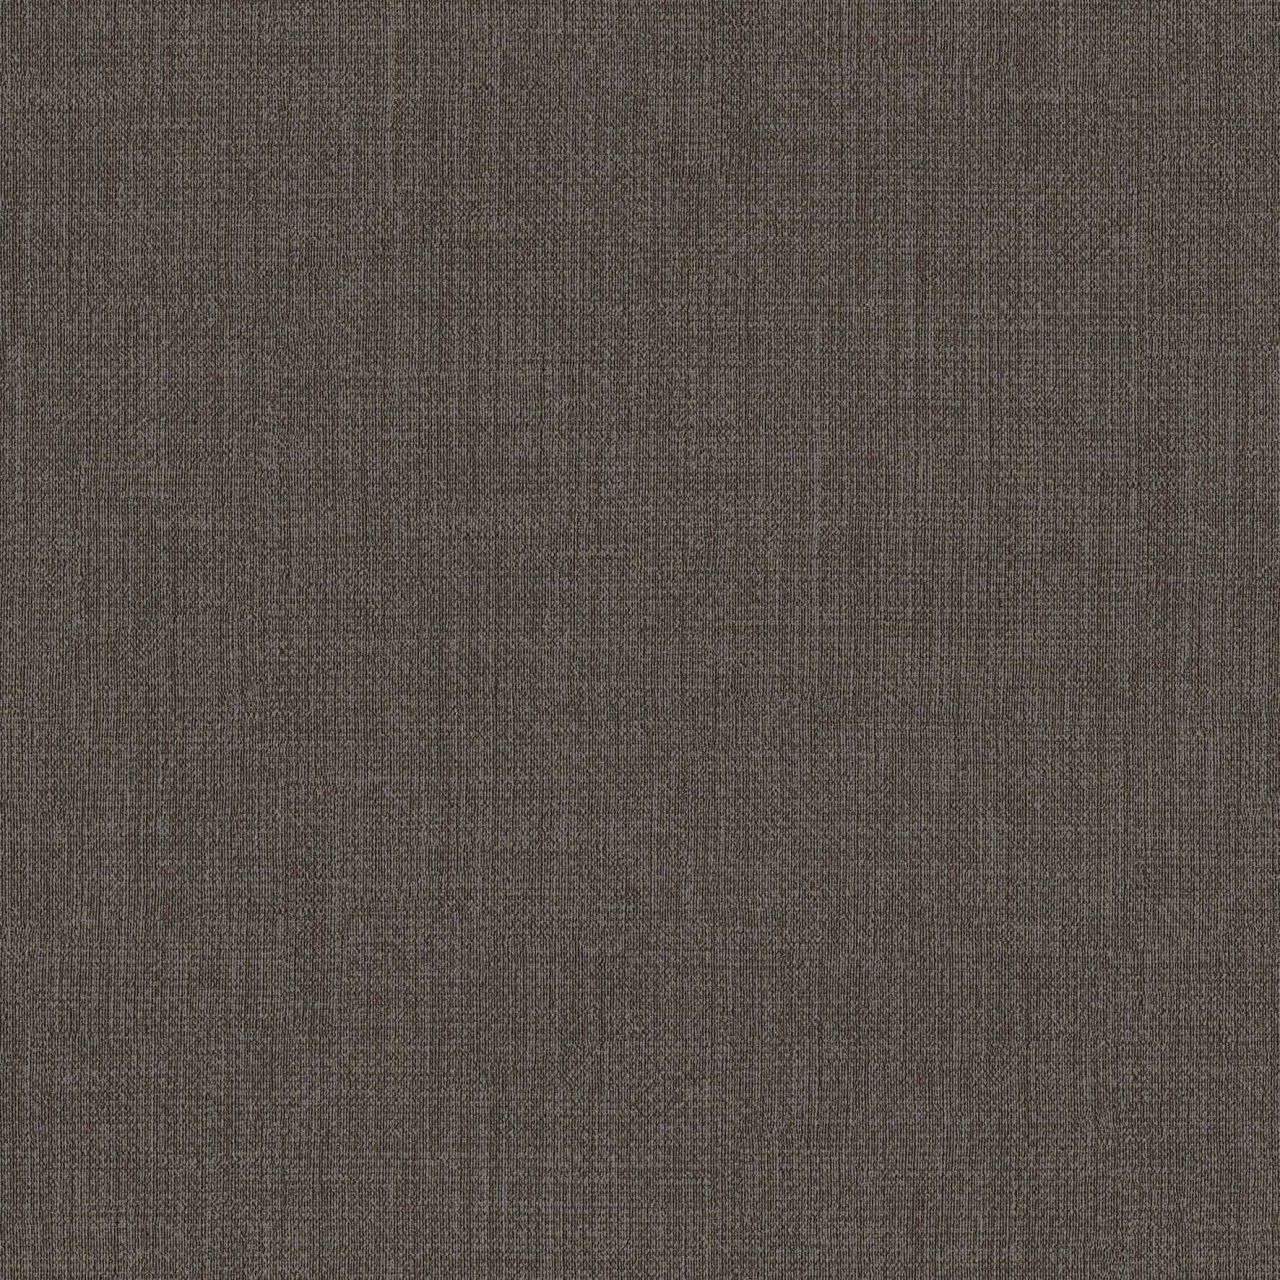 Edo-Tex Beylerbeyi JK 0025 Tekstil Tabanlı Duvar Kağıdı